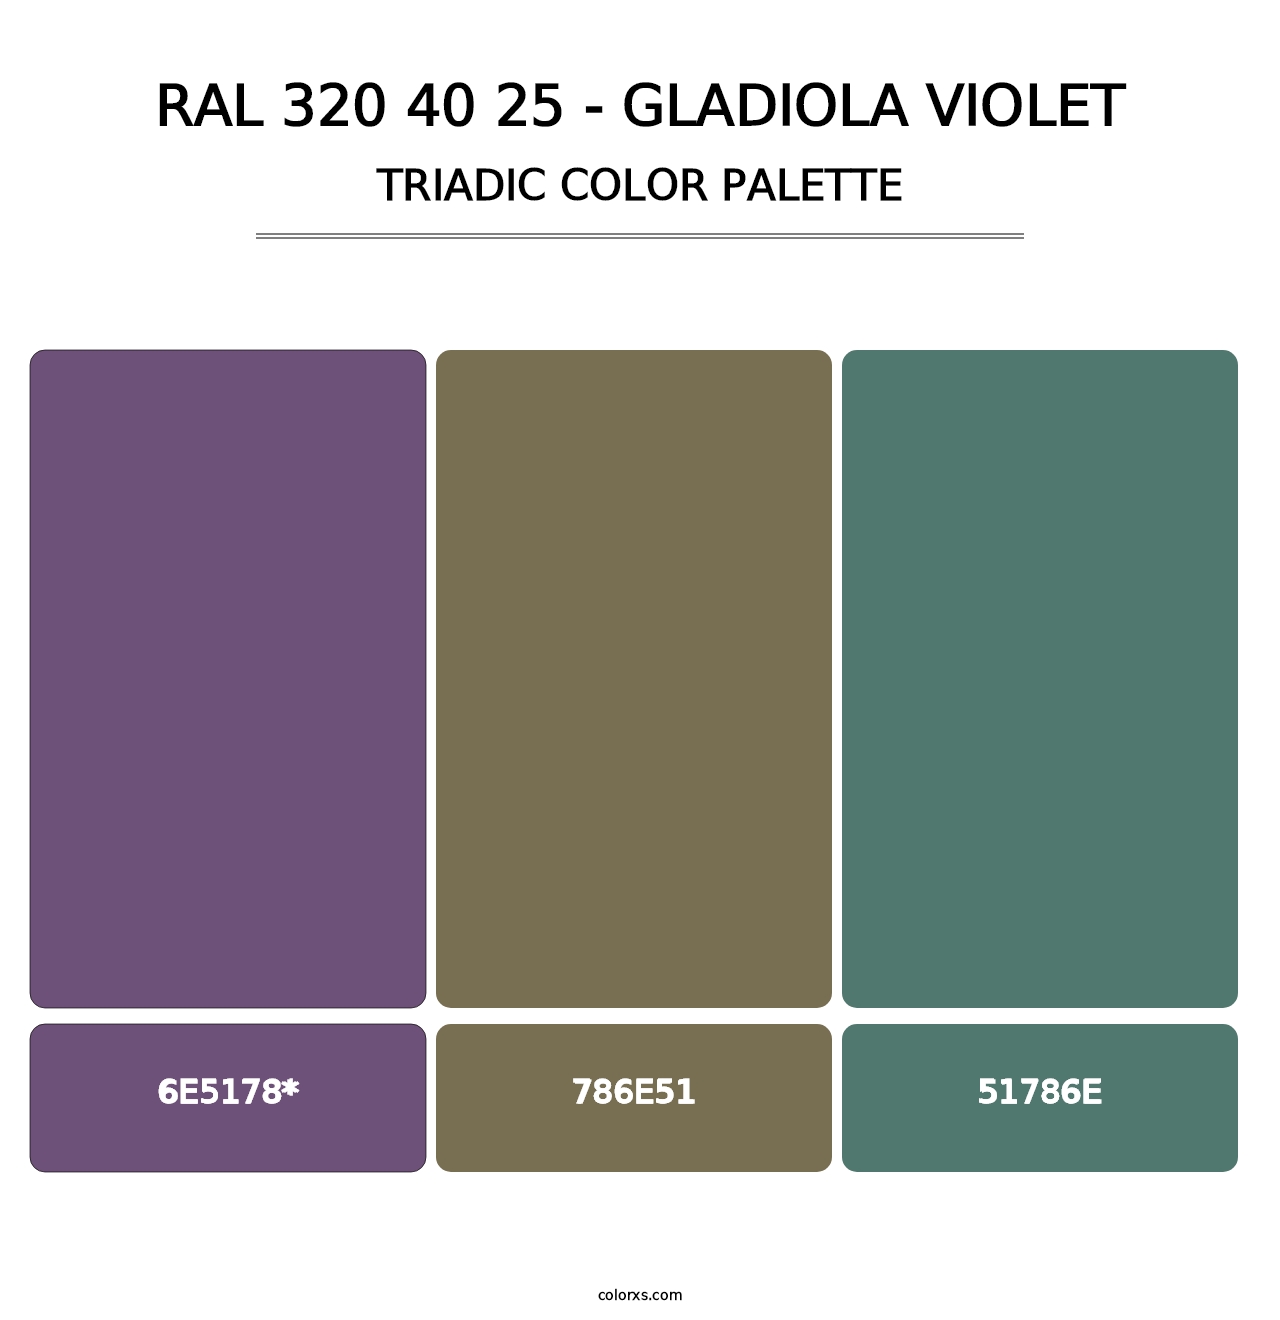 RAL 320 40 25 - Gladiola Violet - Triadic Color Palette